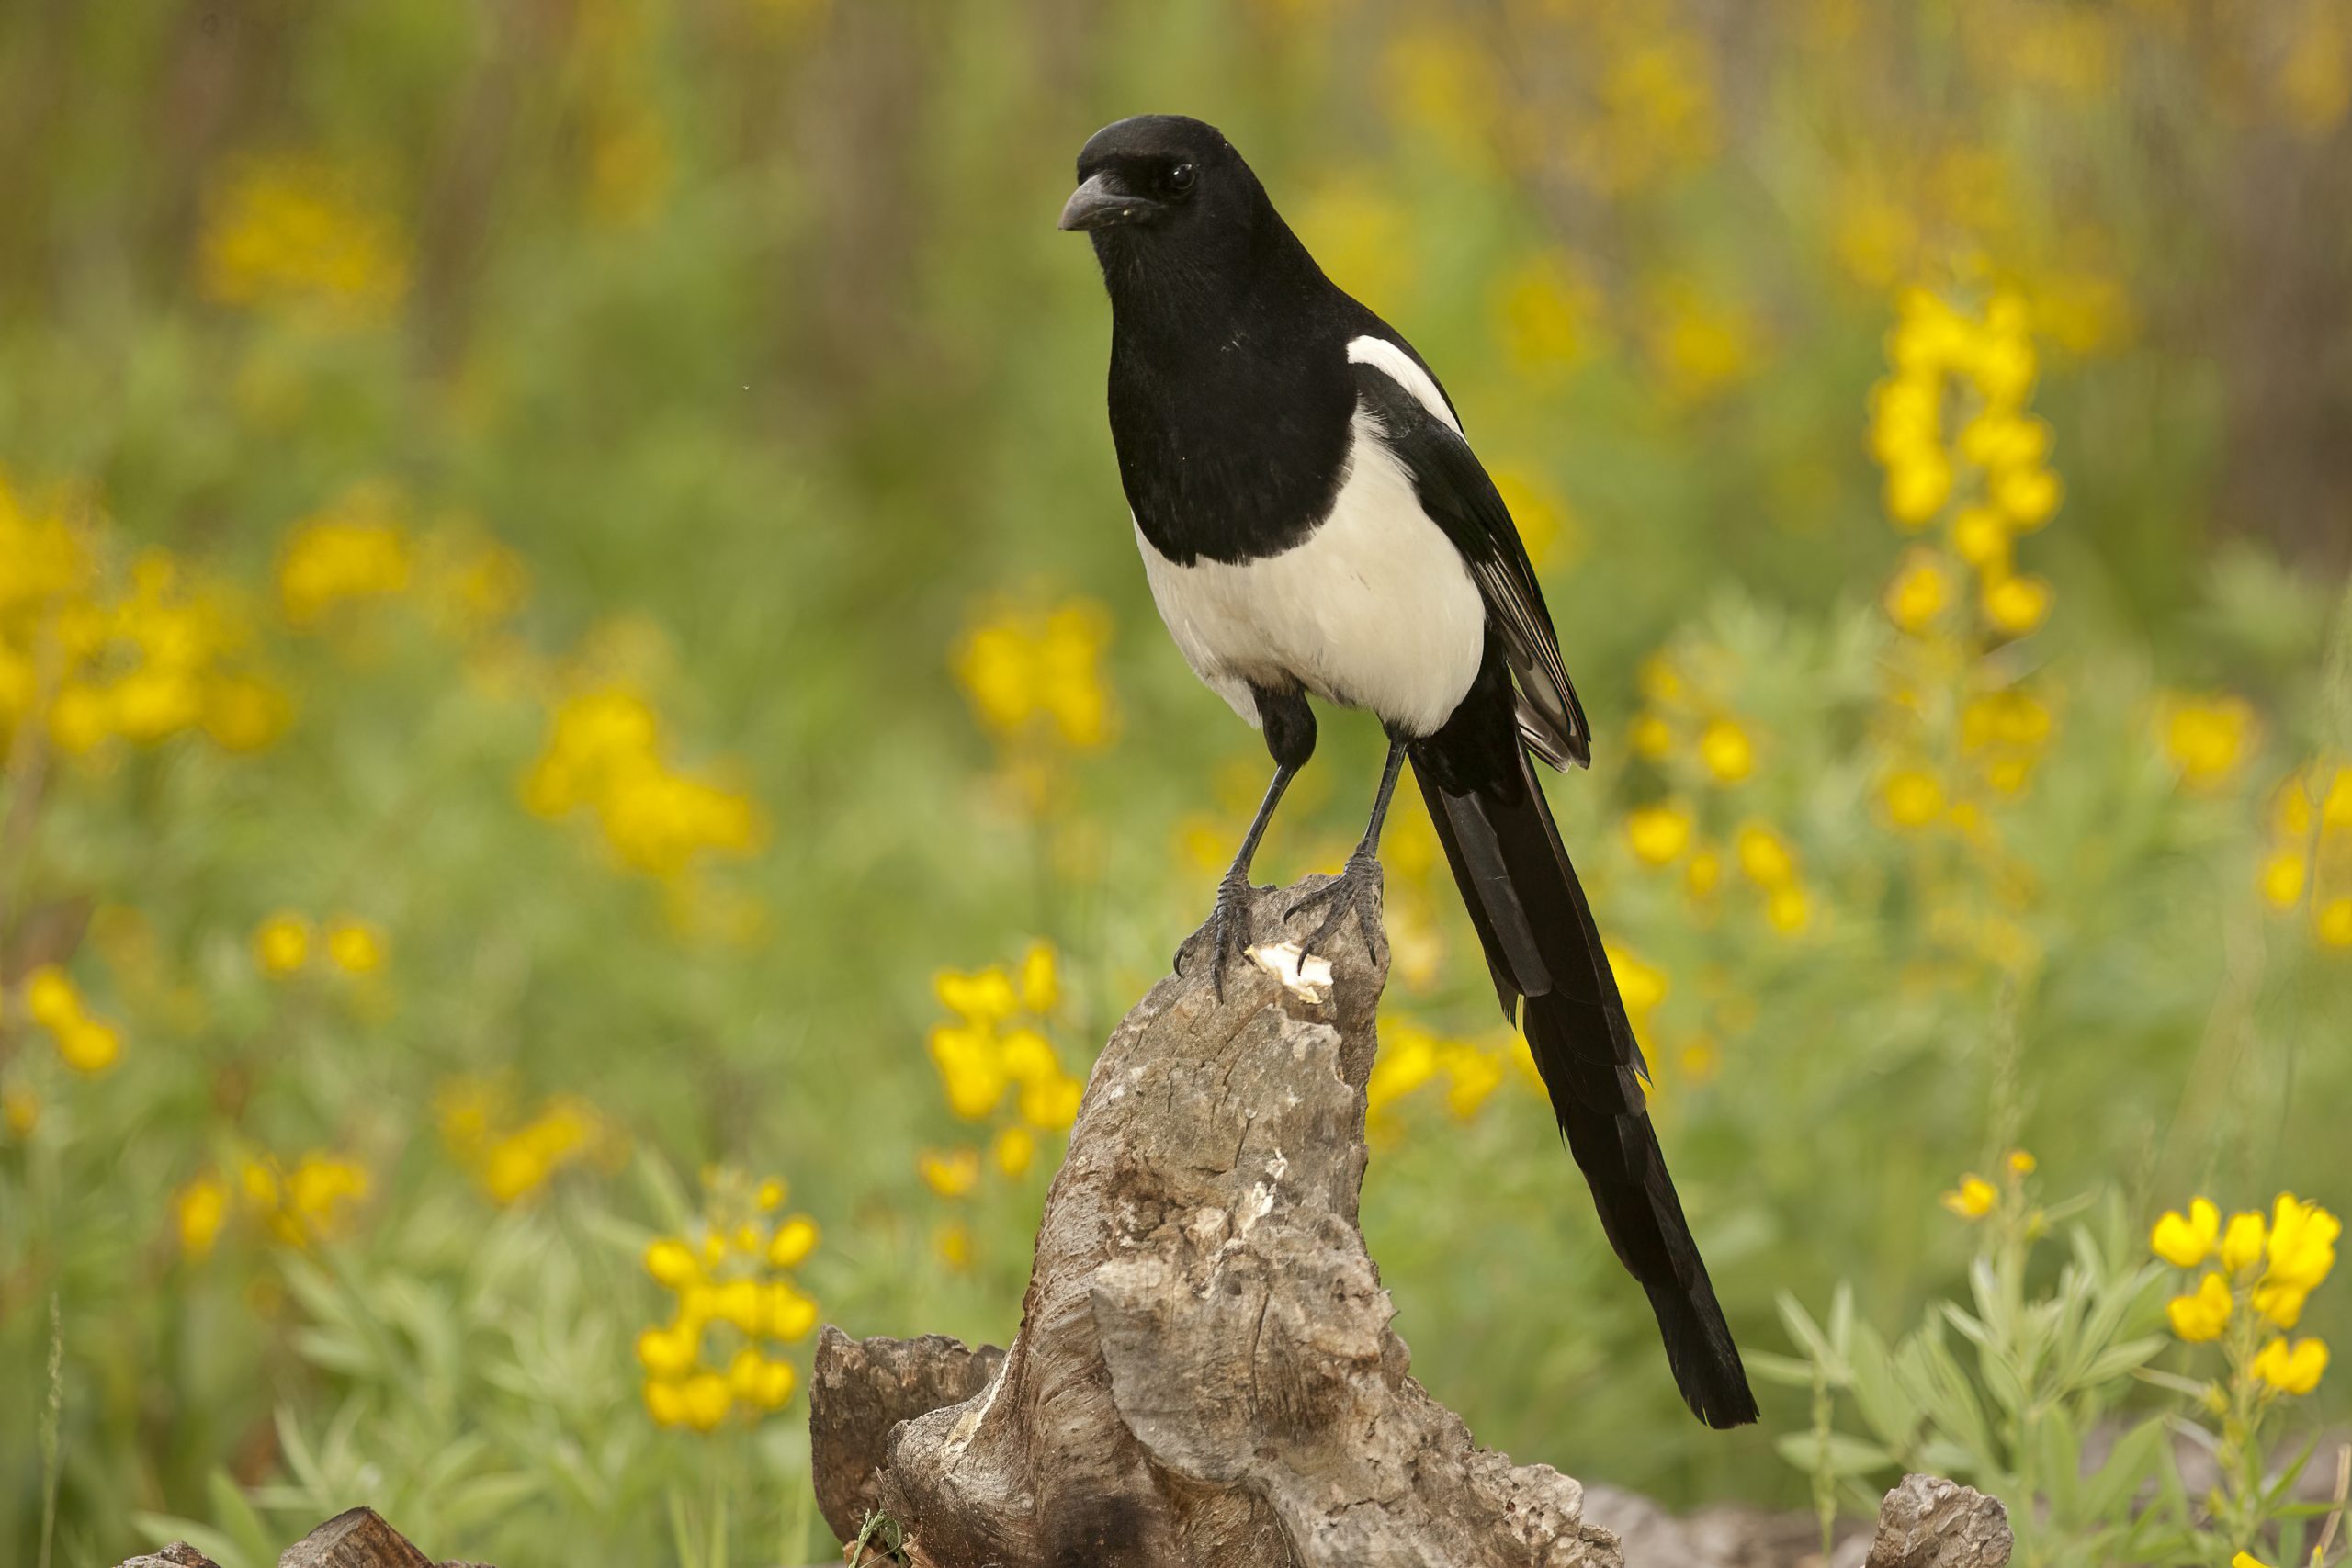 https://www.birdsandblooms.com/birding/bird-species/black-billed-urraca/